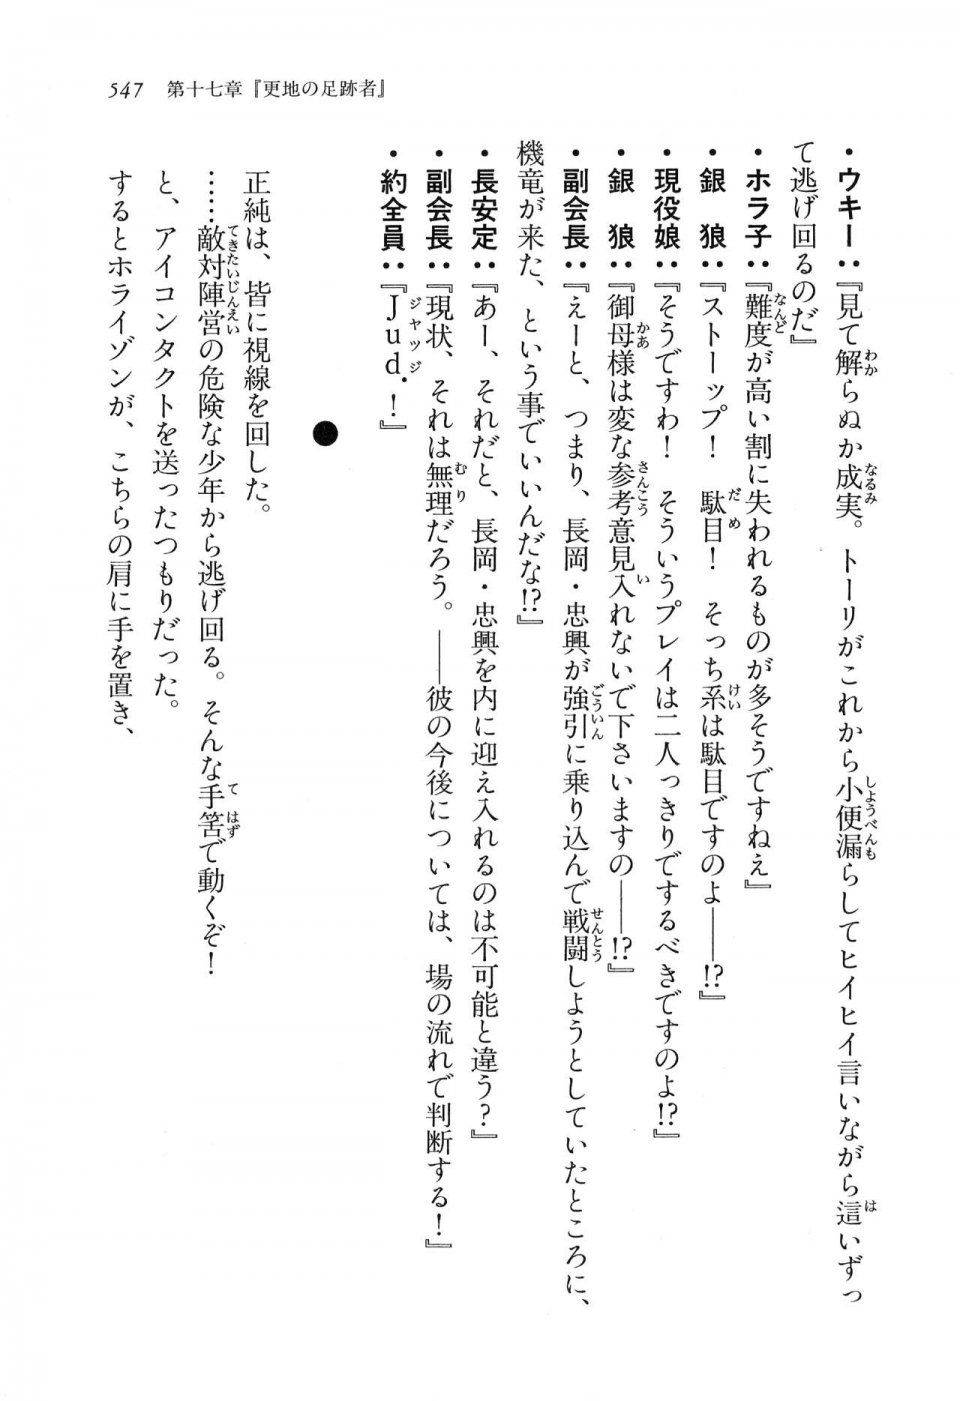 Kyoukai Senjou no Horizon LN Vol 16(7A) - Photo #547